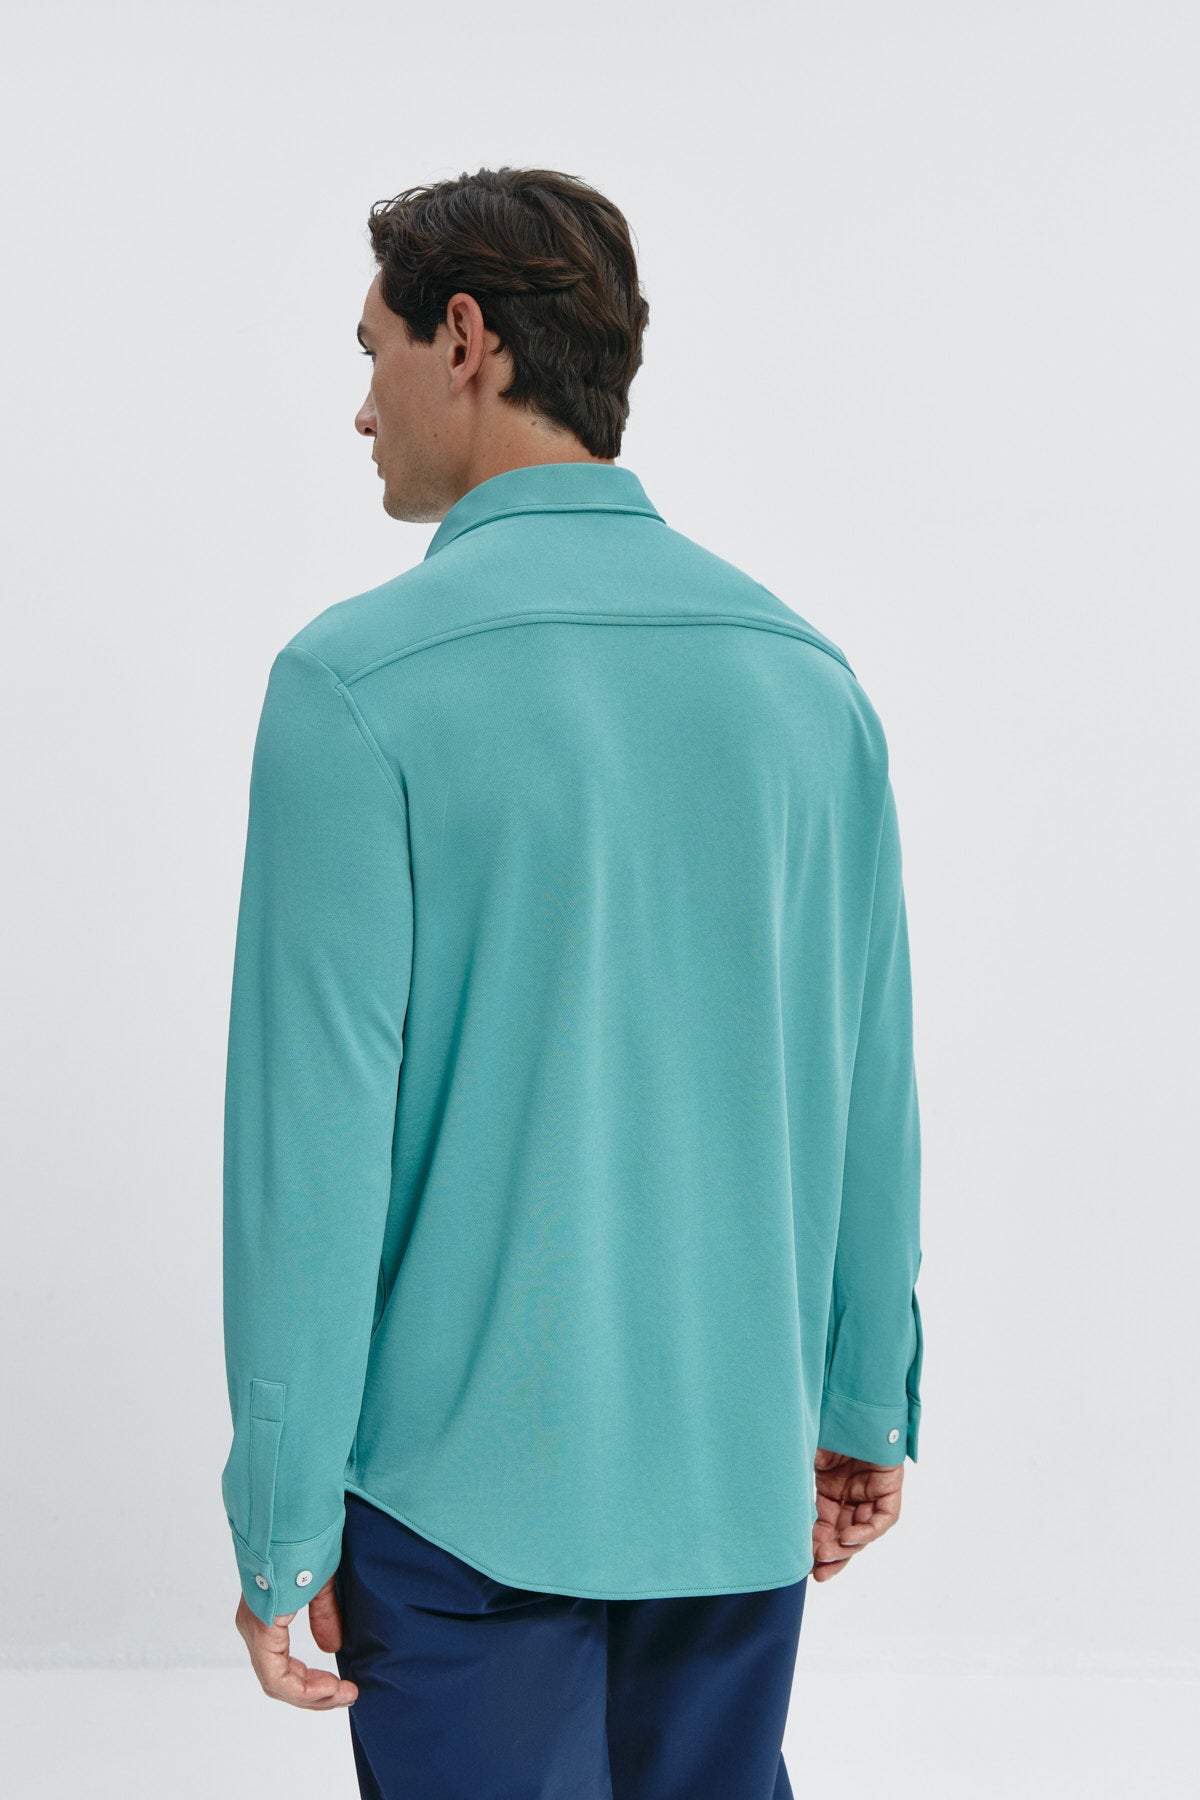 Camisa casual de hombre verde clorofila regular de Sepiia, estilo y versatilidad en una prenda duradera. Foto espalda